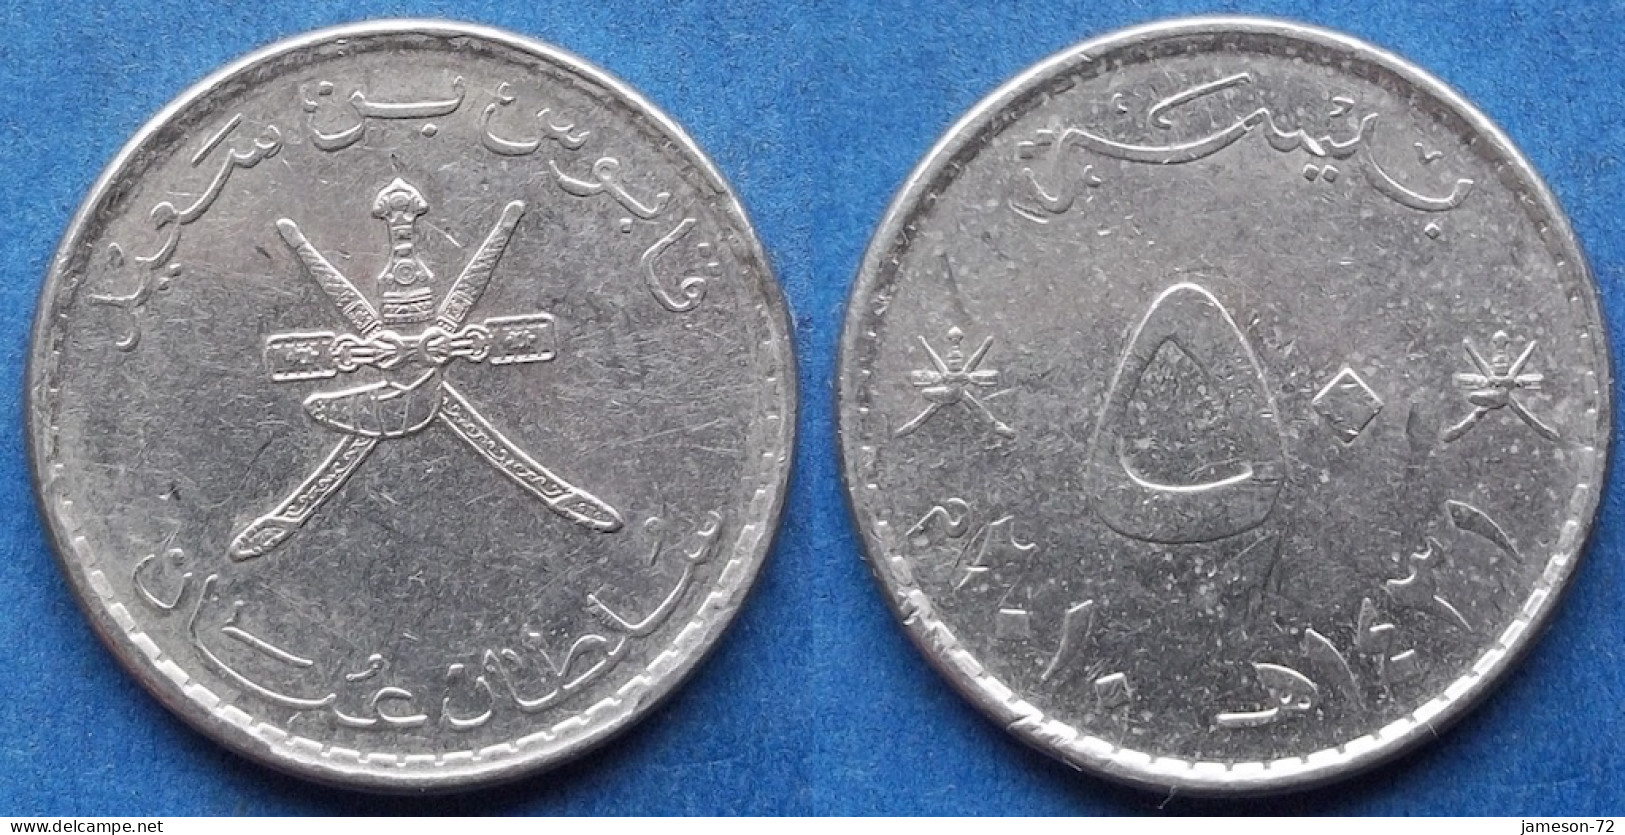 OMAN - 50 Baisa AH1431 2010AD KM# 153a Sultan Quabus Bin Sa'id Reform Coinage (1972) - Edelweiss Coins - Oman